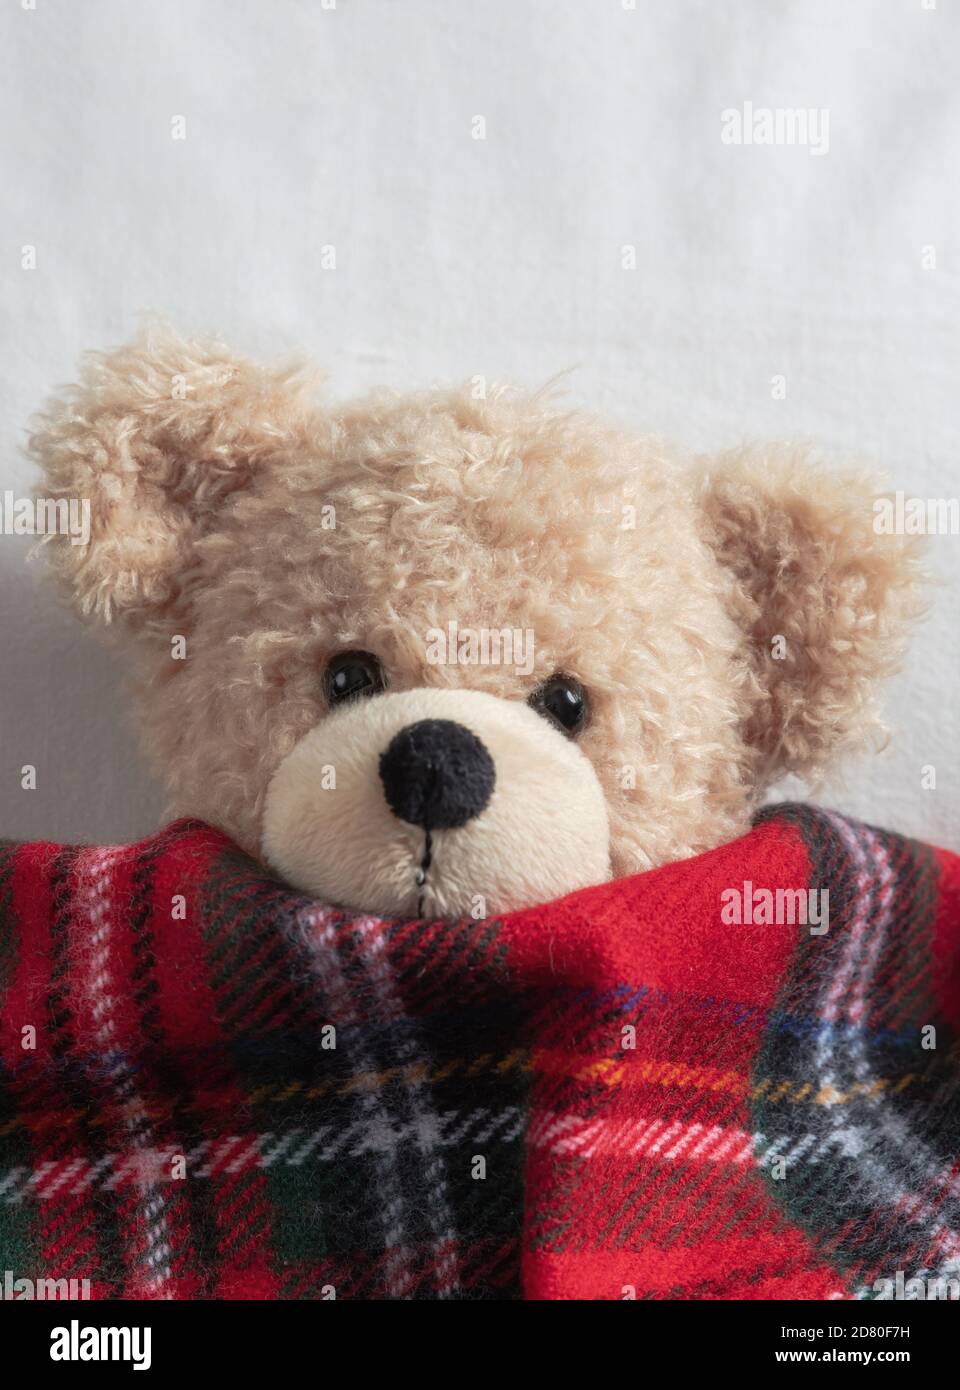 Kinder schlafen. Niedlicher Teddy, der mit einer warmen Decke bedeckt ist und im Bett ruht Stockfoto